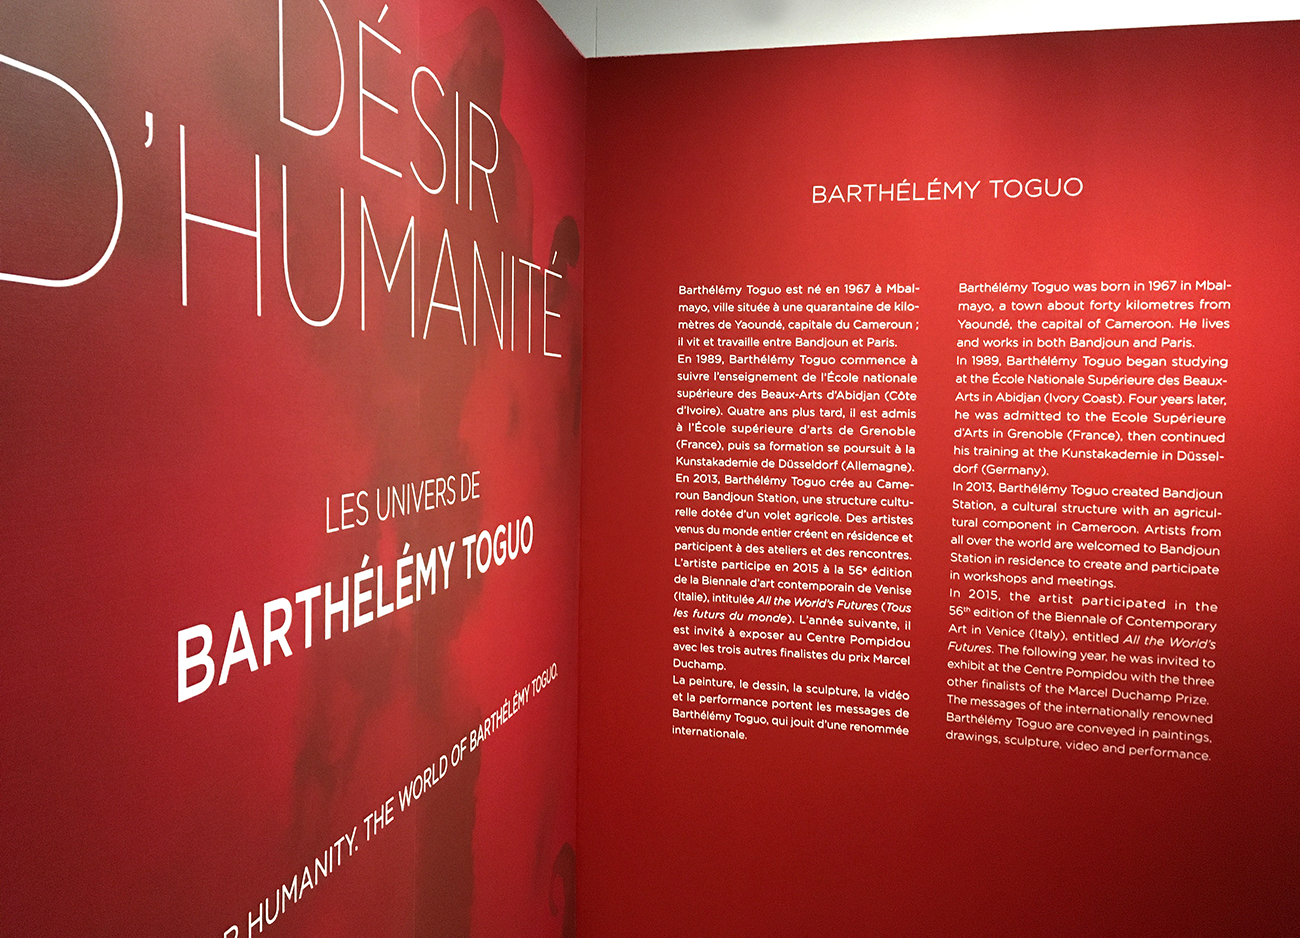 Désir d'humanité. Les univers de Barthélémy Toguo. Musée du quai Branly. Graphisme de l'exposition : Tania HAGEMEISTER